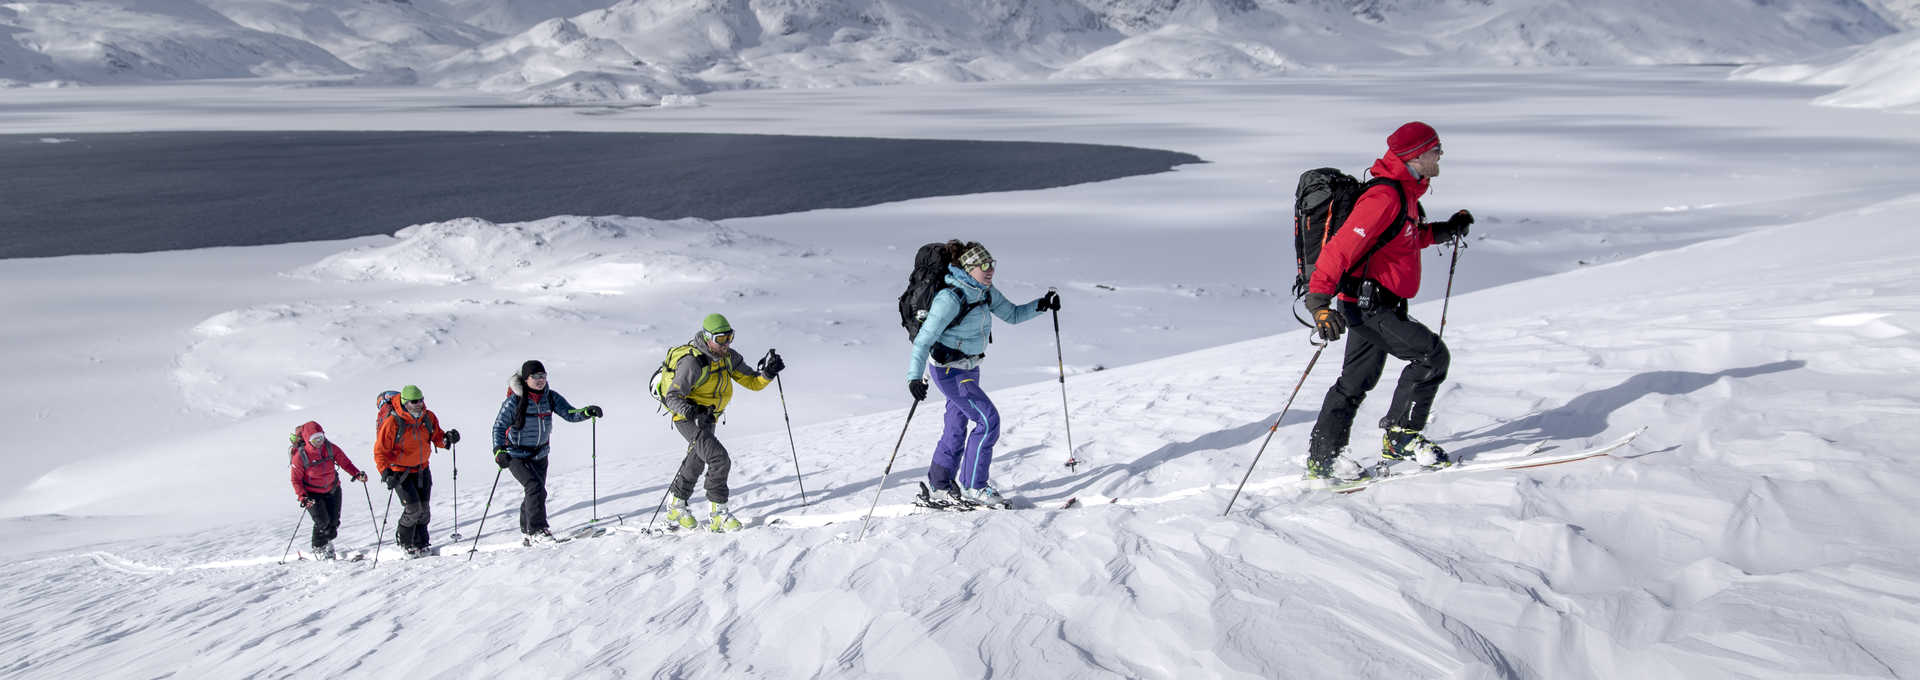 Voyage ski au Groenland en hiver